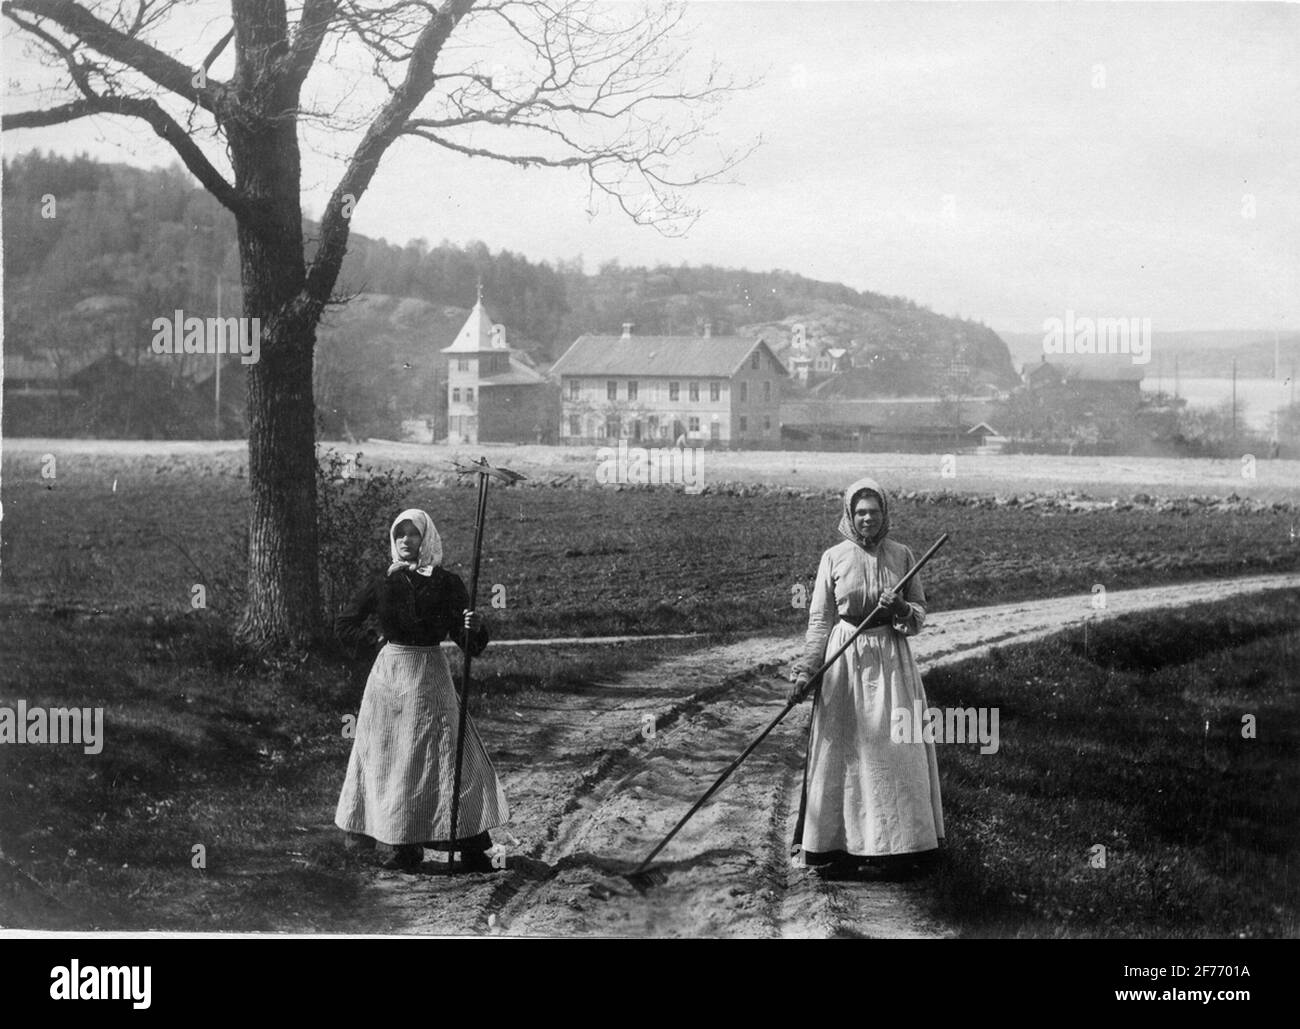 Due donne con ringhiere su strada ghiaiata che conduce verso i pals del porto di heatherskila. Immagine dal materiale immagine della rivista home. Foto Stock